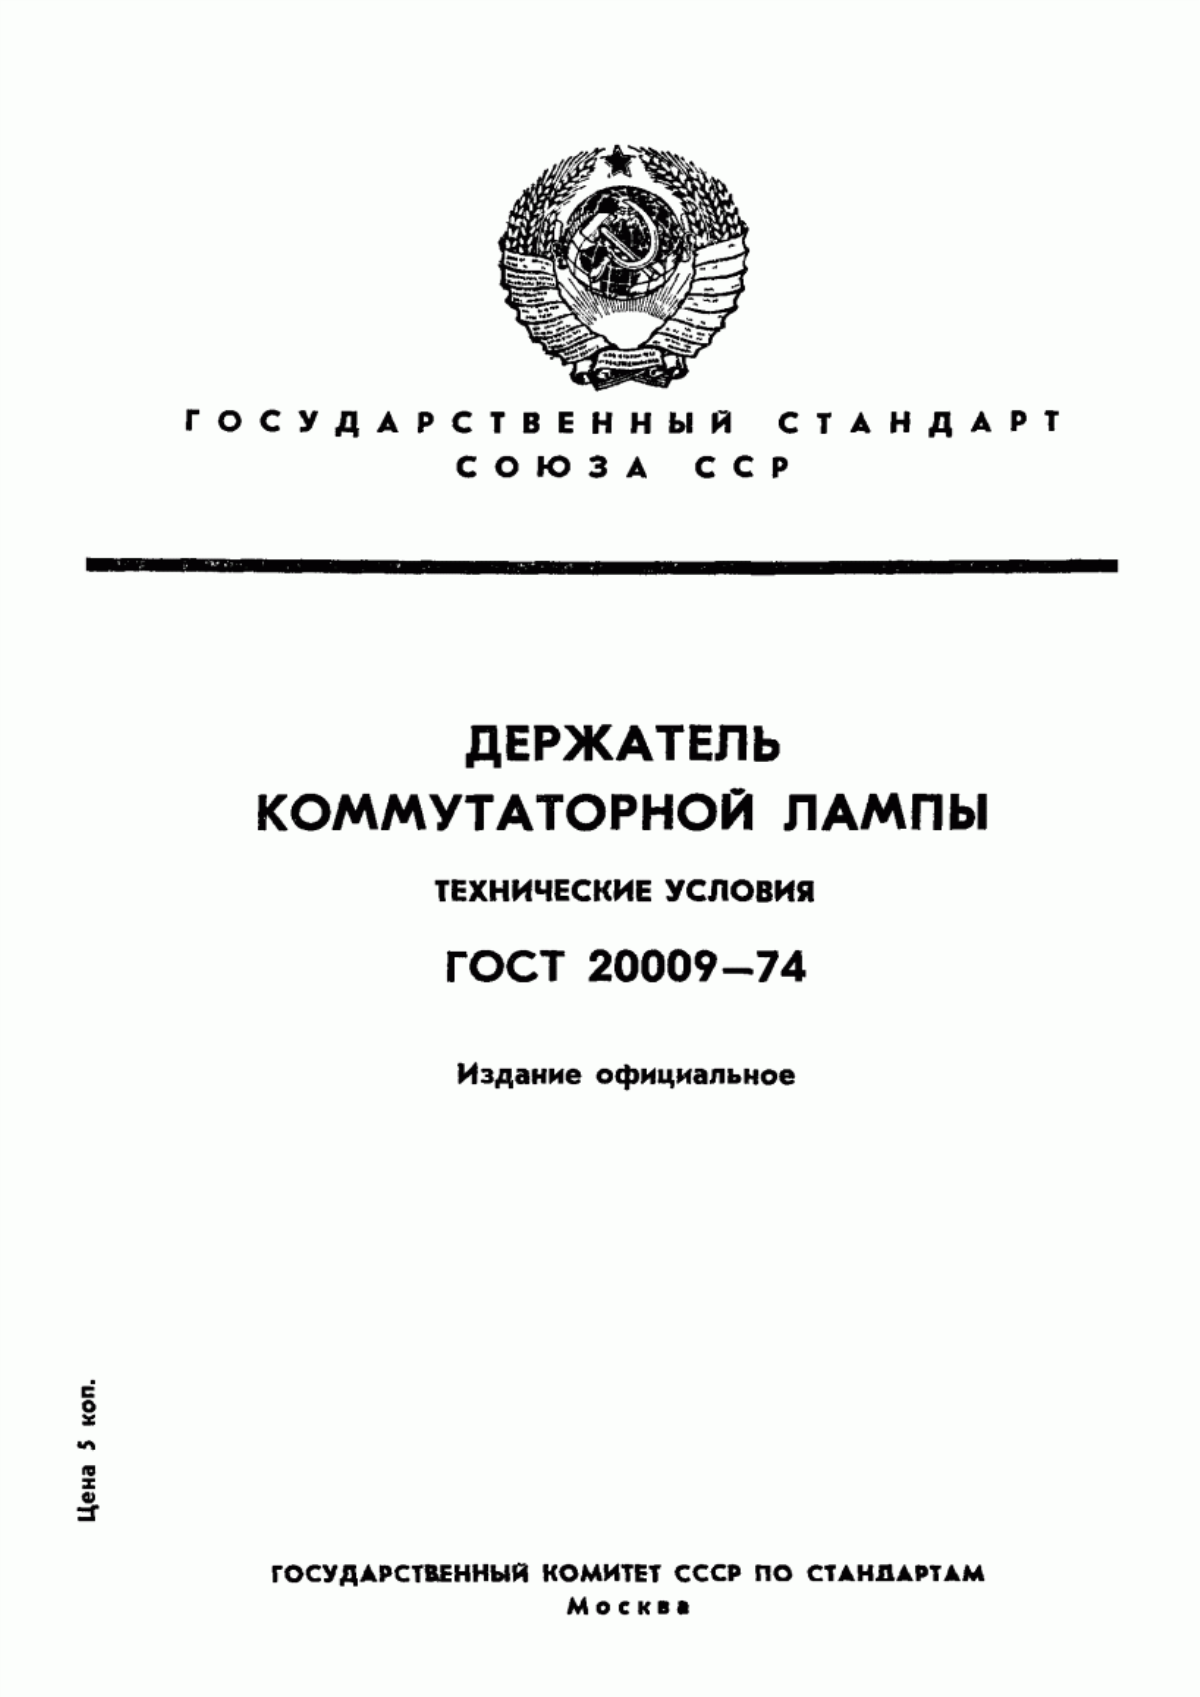 ГОСТ 20009-74 Держатель коммутаторной лампы. Технические условия